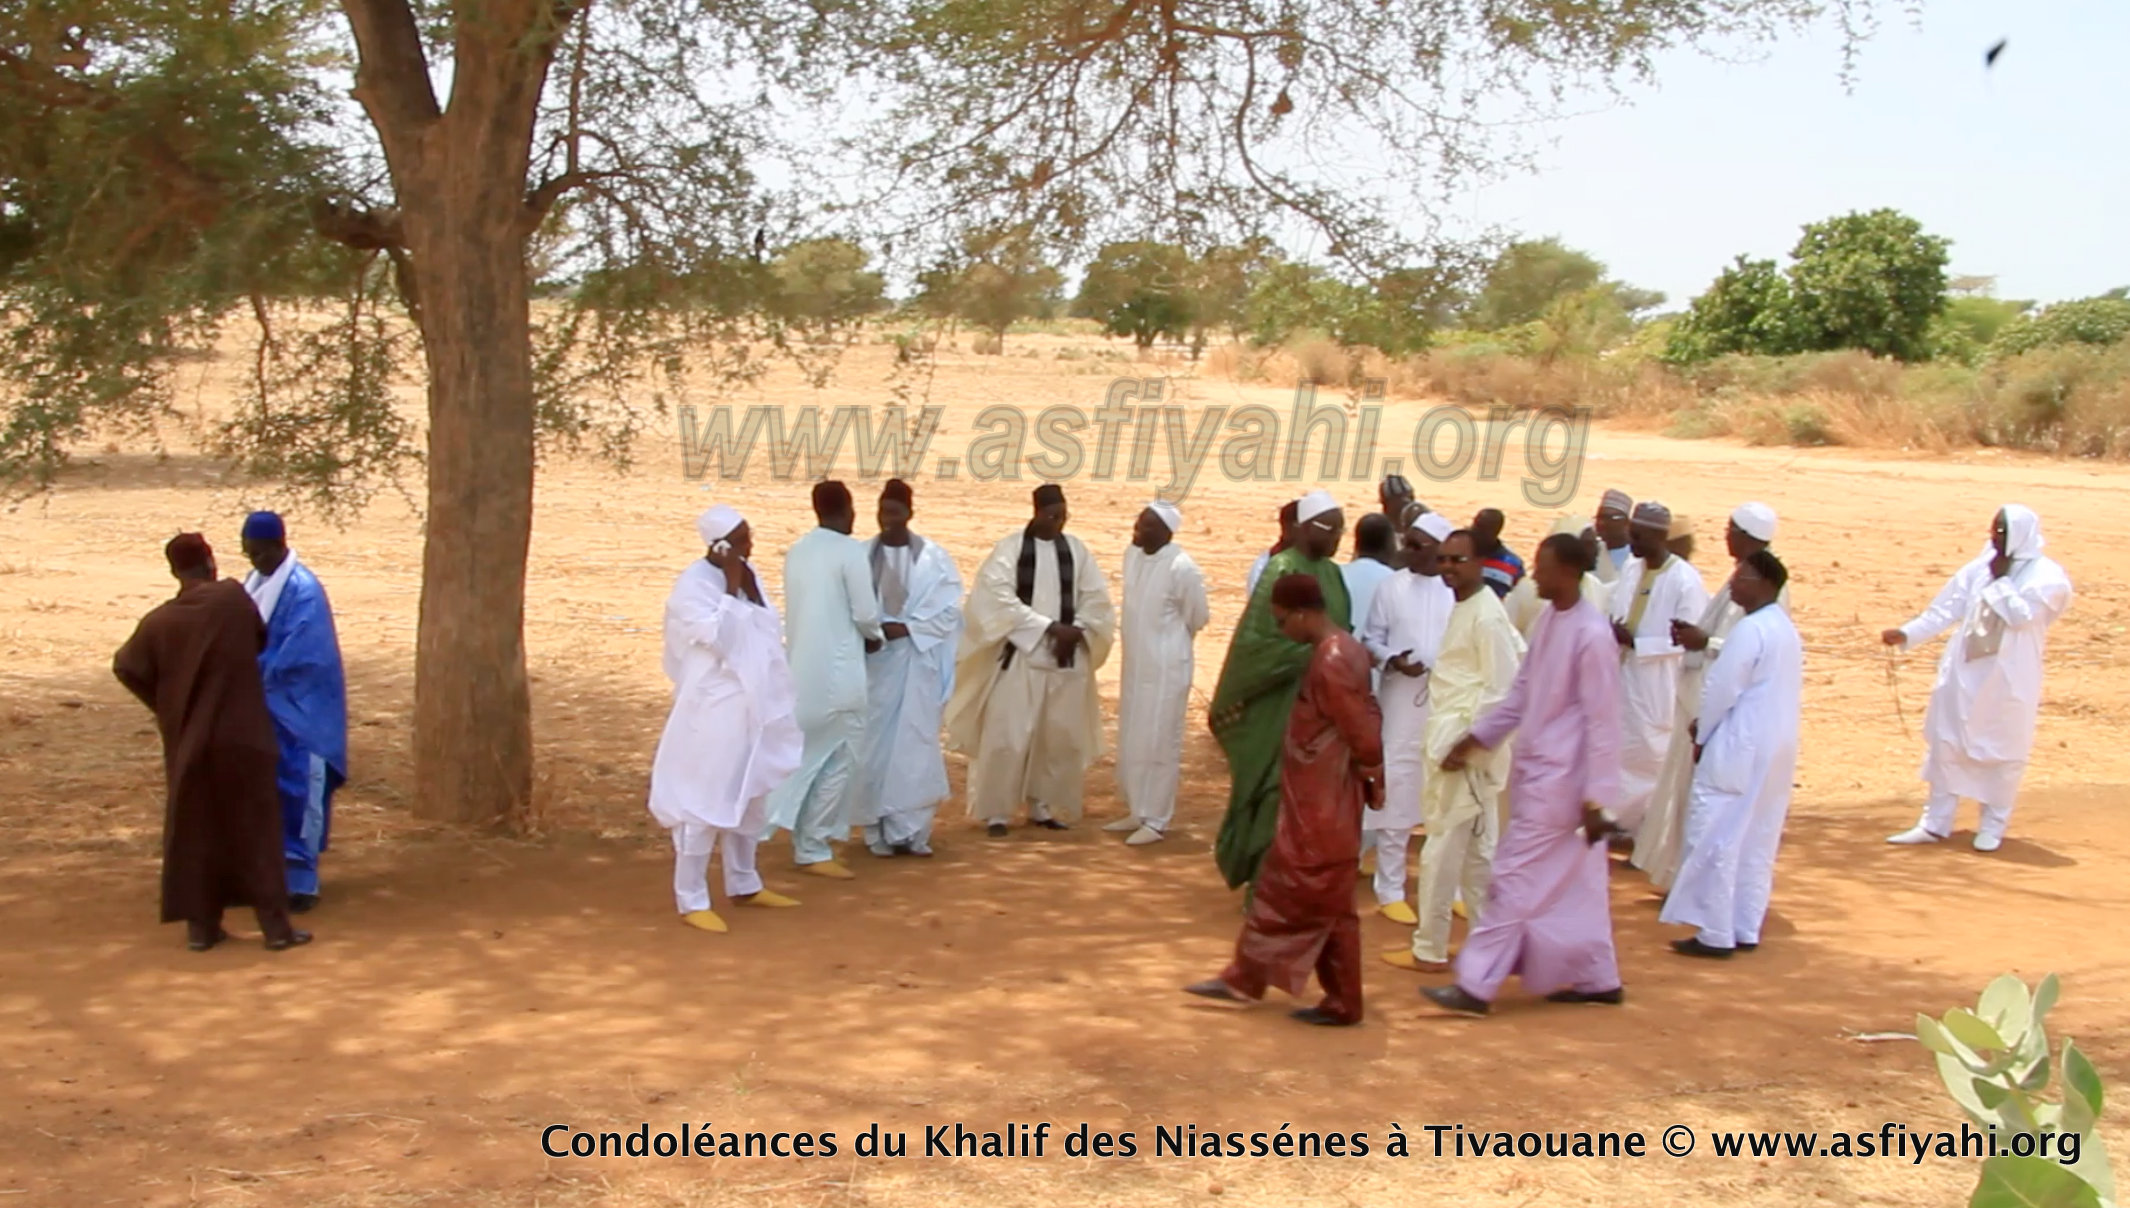 PHOTOS - TIVAOUANE - Les Images de la présentation de Condoléances du khalif de Médina Baye, Cheikh Ahmad Tidiane Niasse 